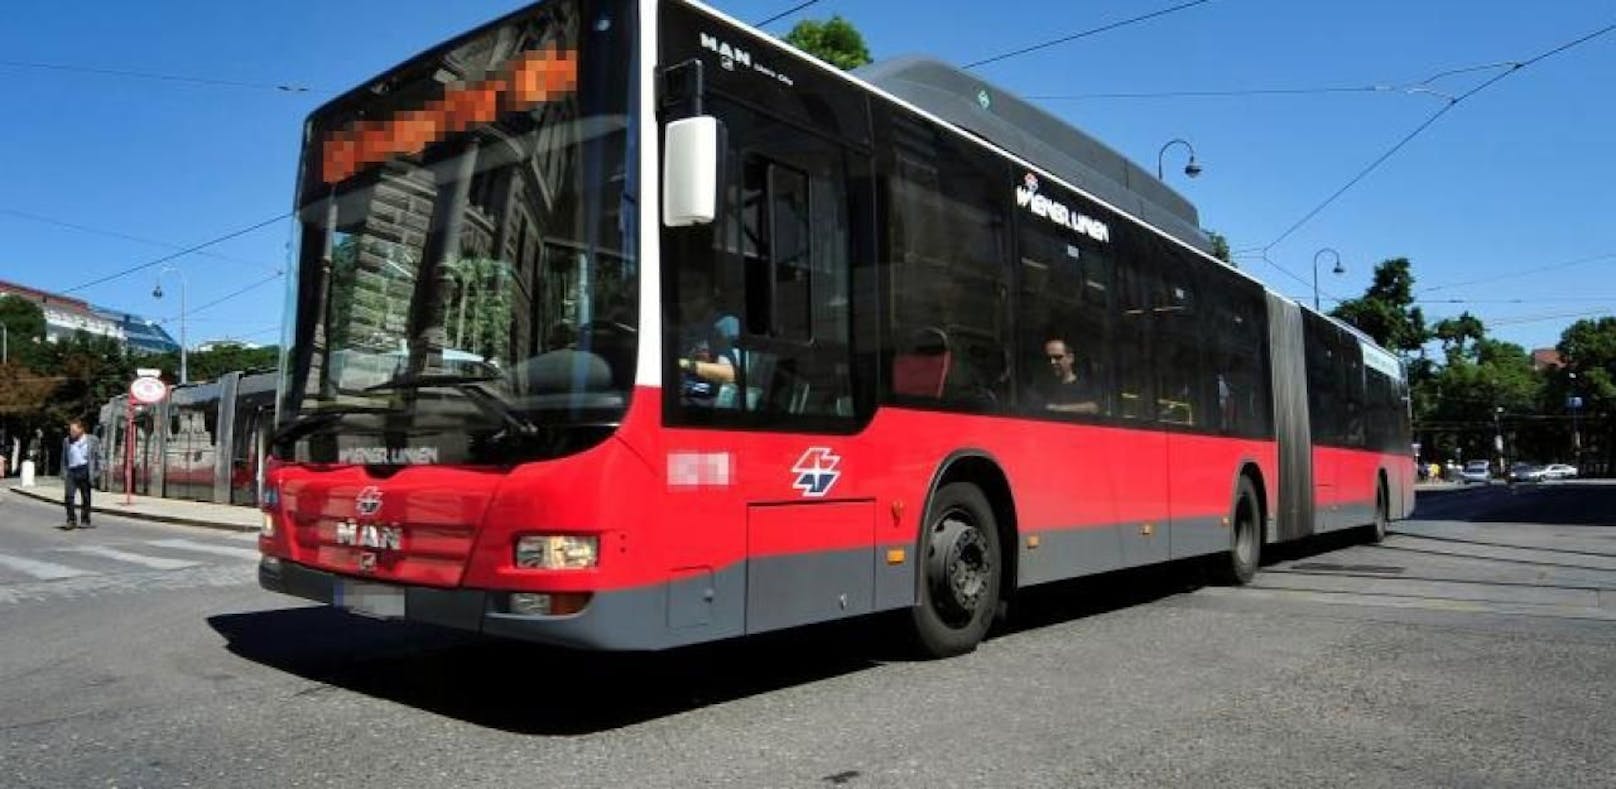 U1-Verlängerung bringt ab September Änderungen im Busfahrplan in Favoriten. 